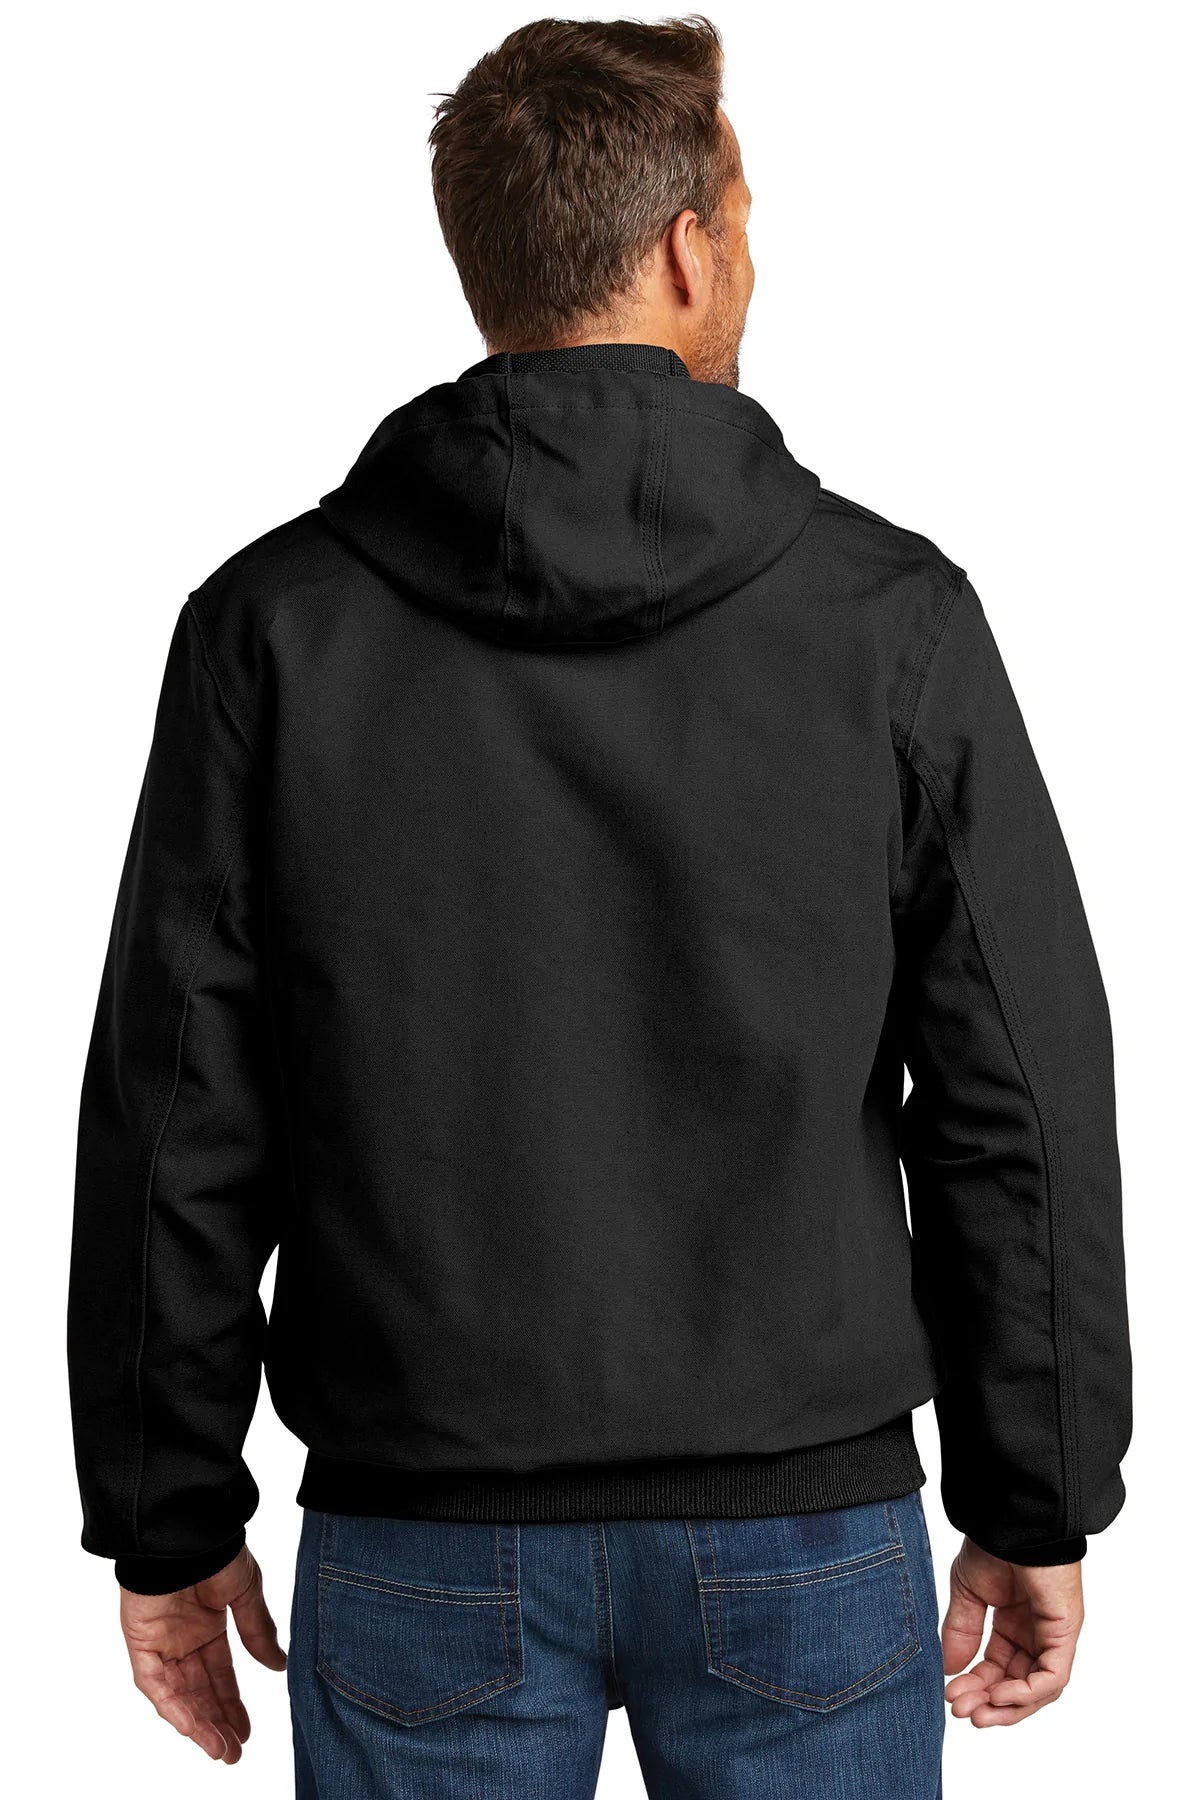 carhartt_cttj131 _black_company_logo_jackets